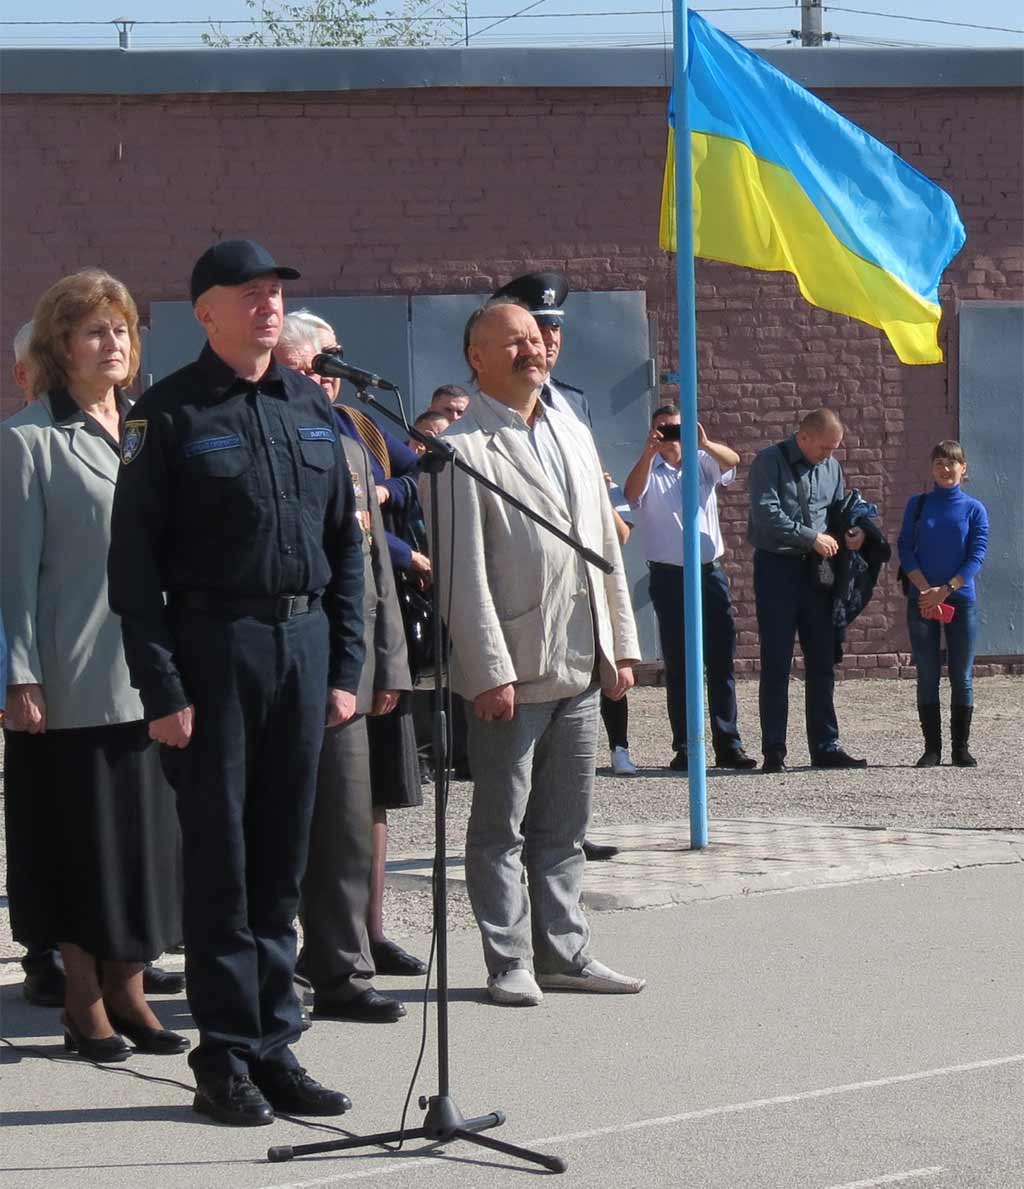 25 поліцейських склали присягу на вірність українському народу.